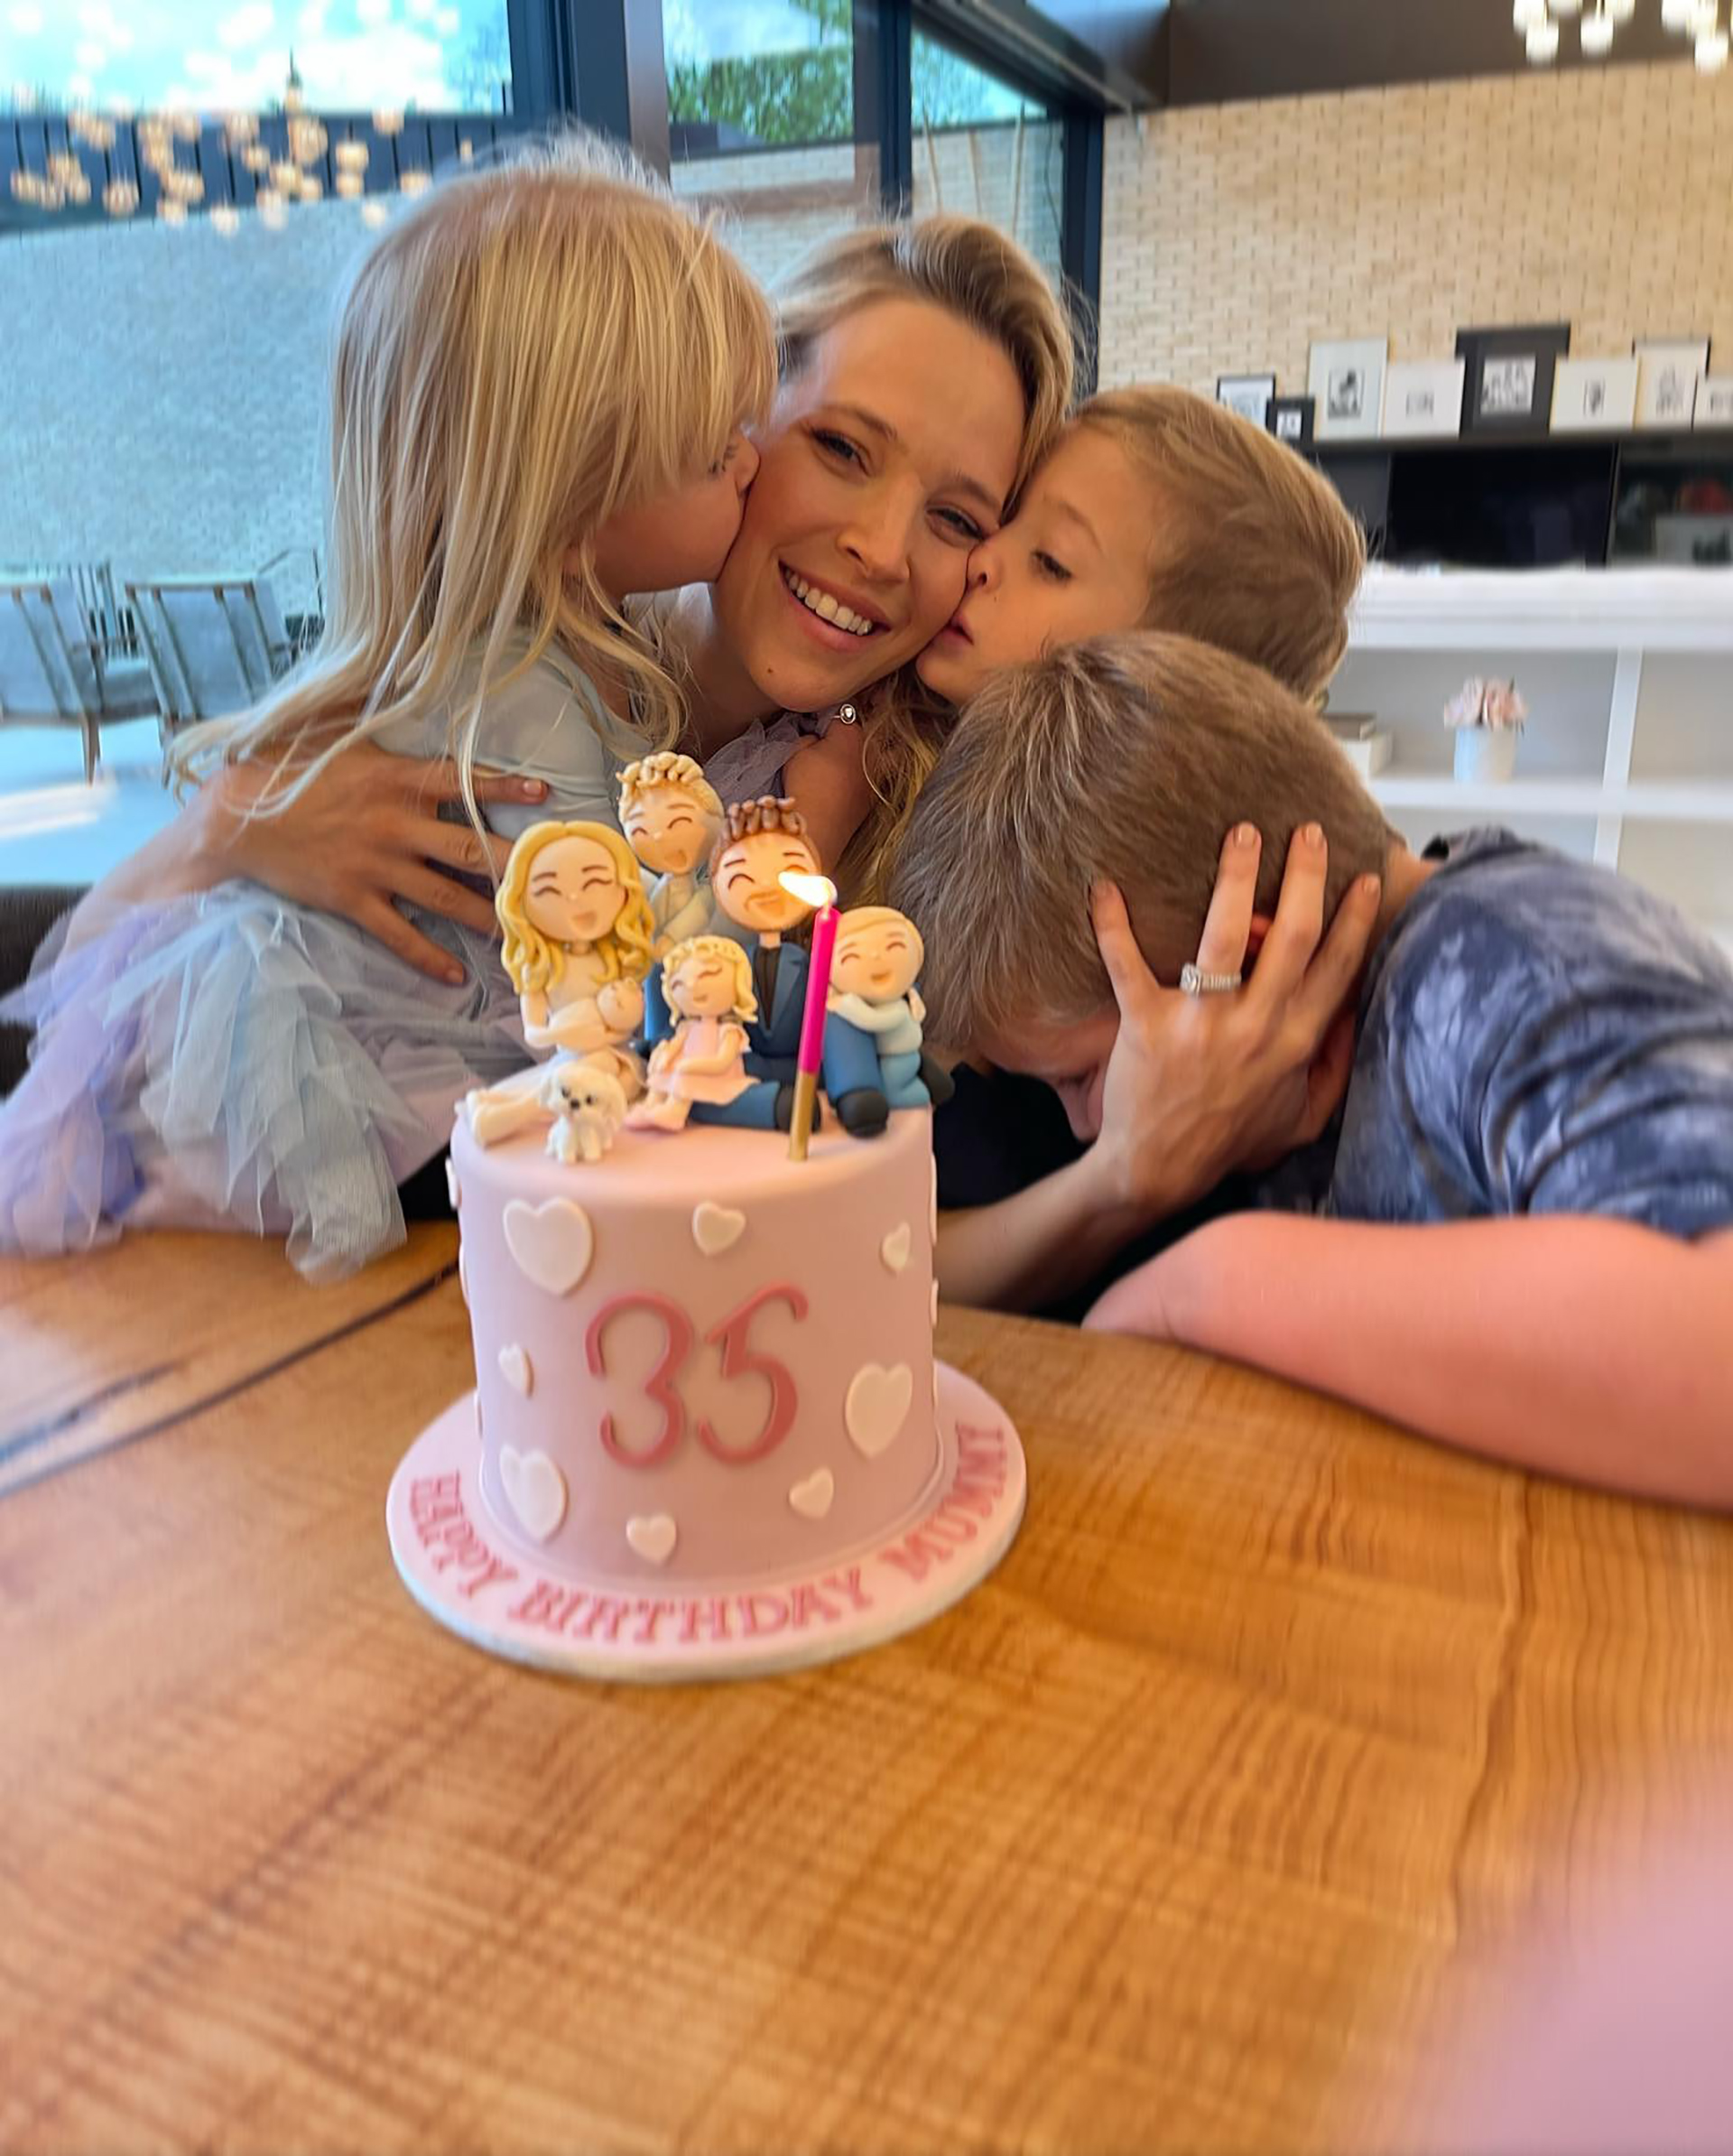 Luisana Lopilato con sus hijos y la torta de cumpleaños